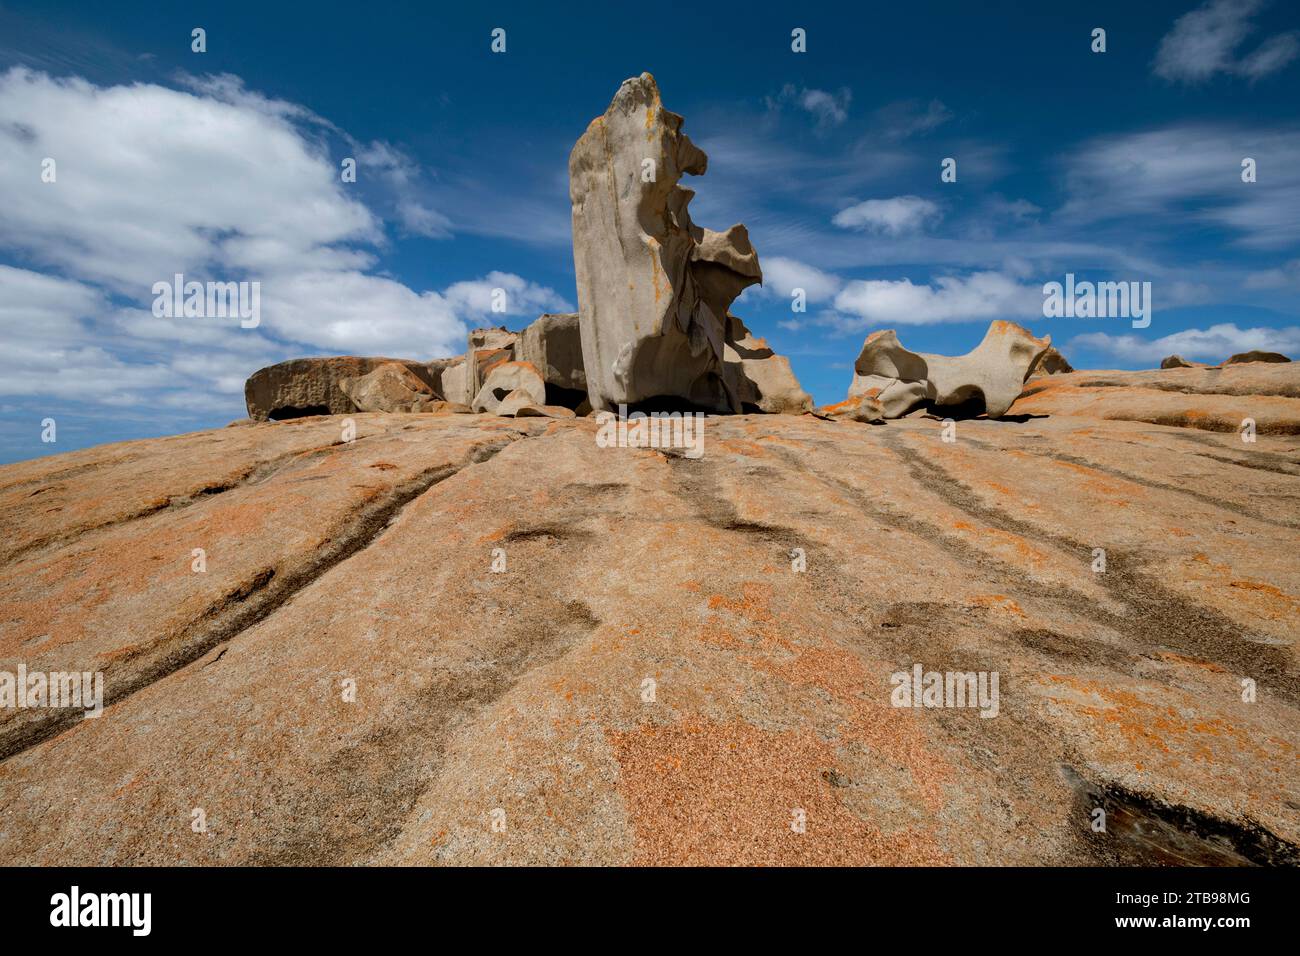 Rochers dans le parc national de Flinders Chase, une zone protégée située à l'extrémité ouest de Kangaroo Island ; Adélaïde, Australie méridionale, Australie Banque D'Images